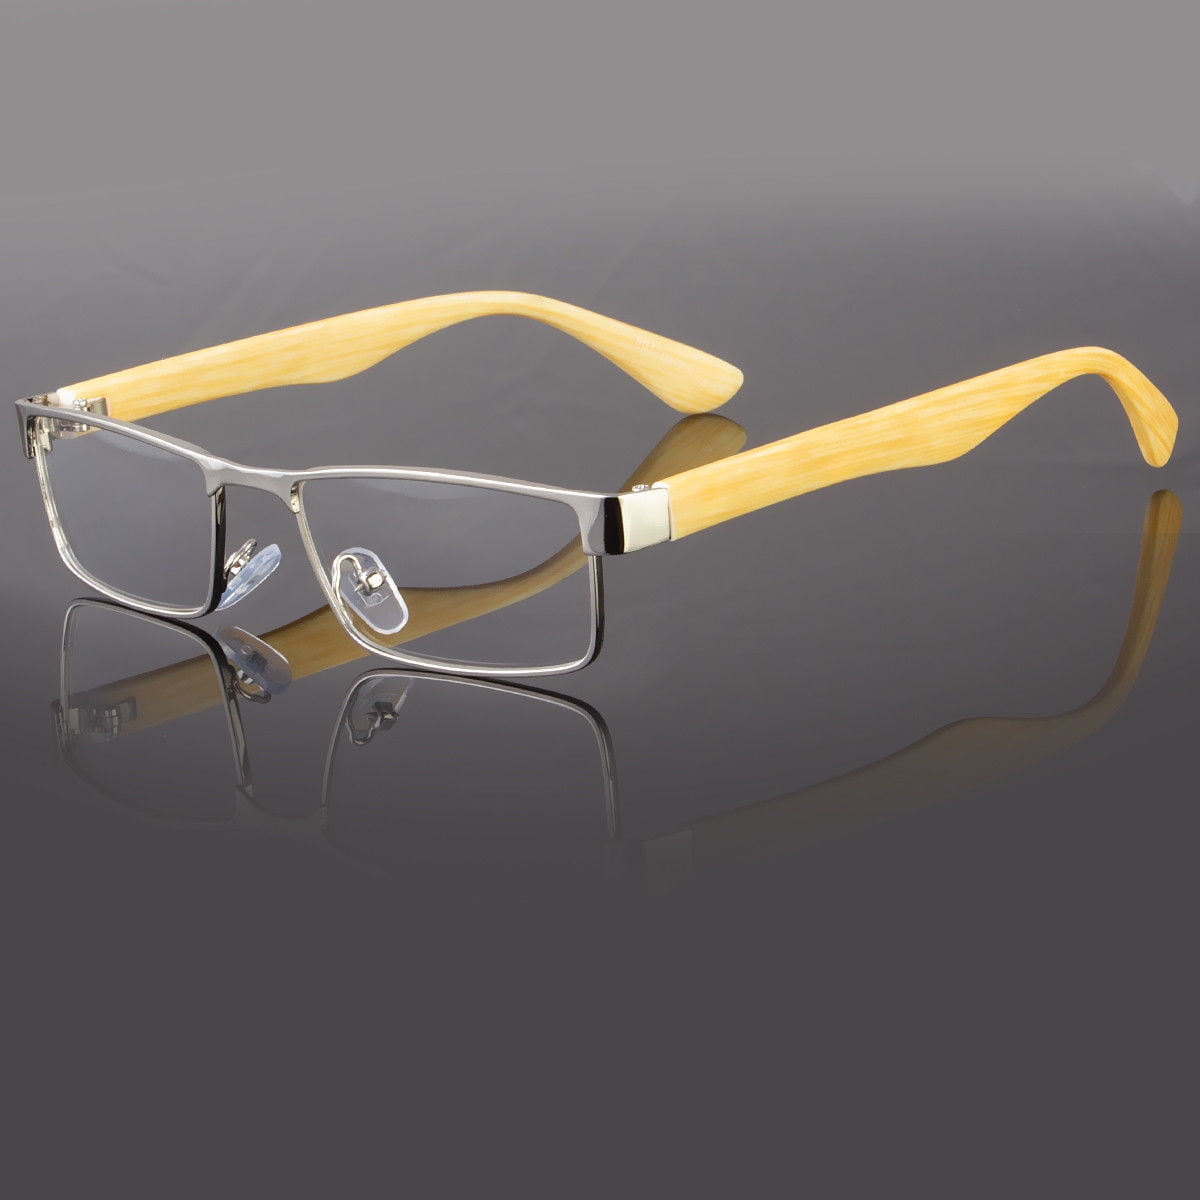 New Clear Lens Square Frame Eye Glasses Designer Womens Mens Fashion ...